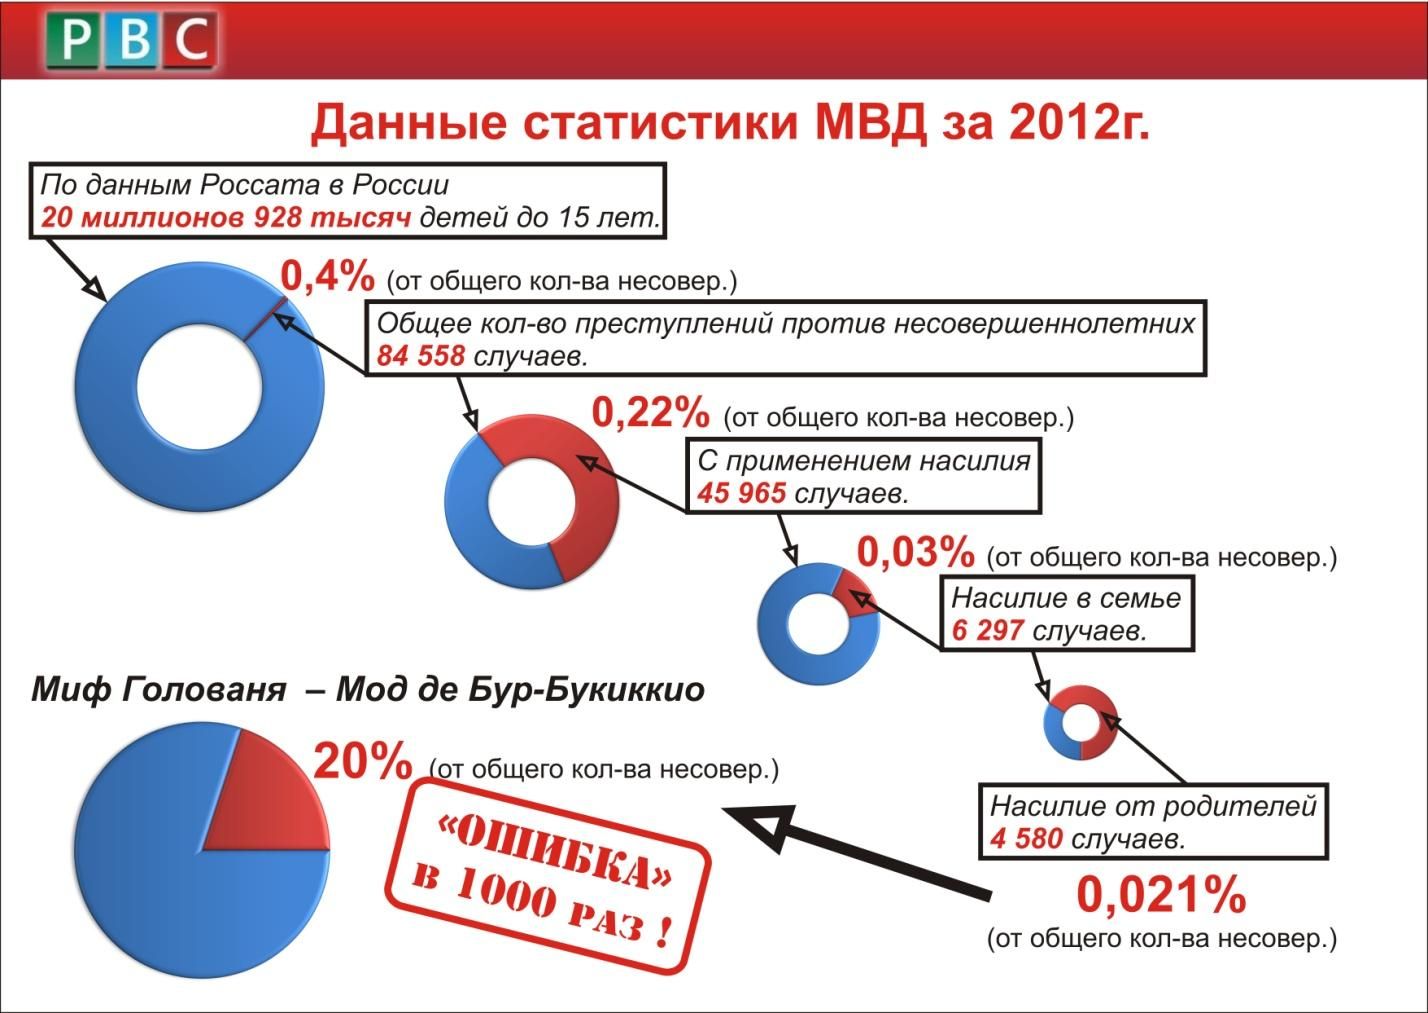 Данные Главного информационно-аналитического центра (ГИАЦ) МВД за 2012 год